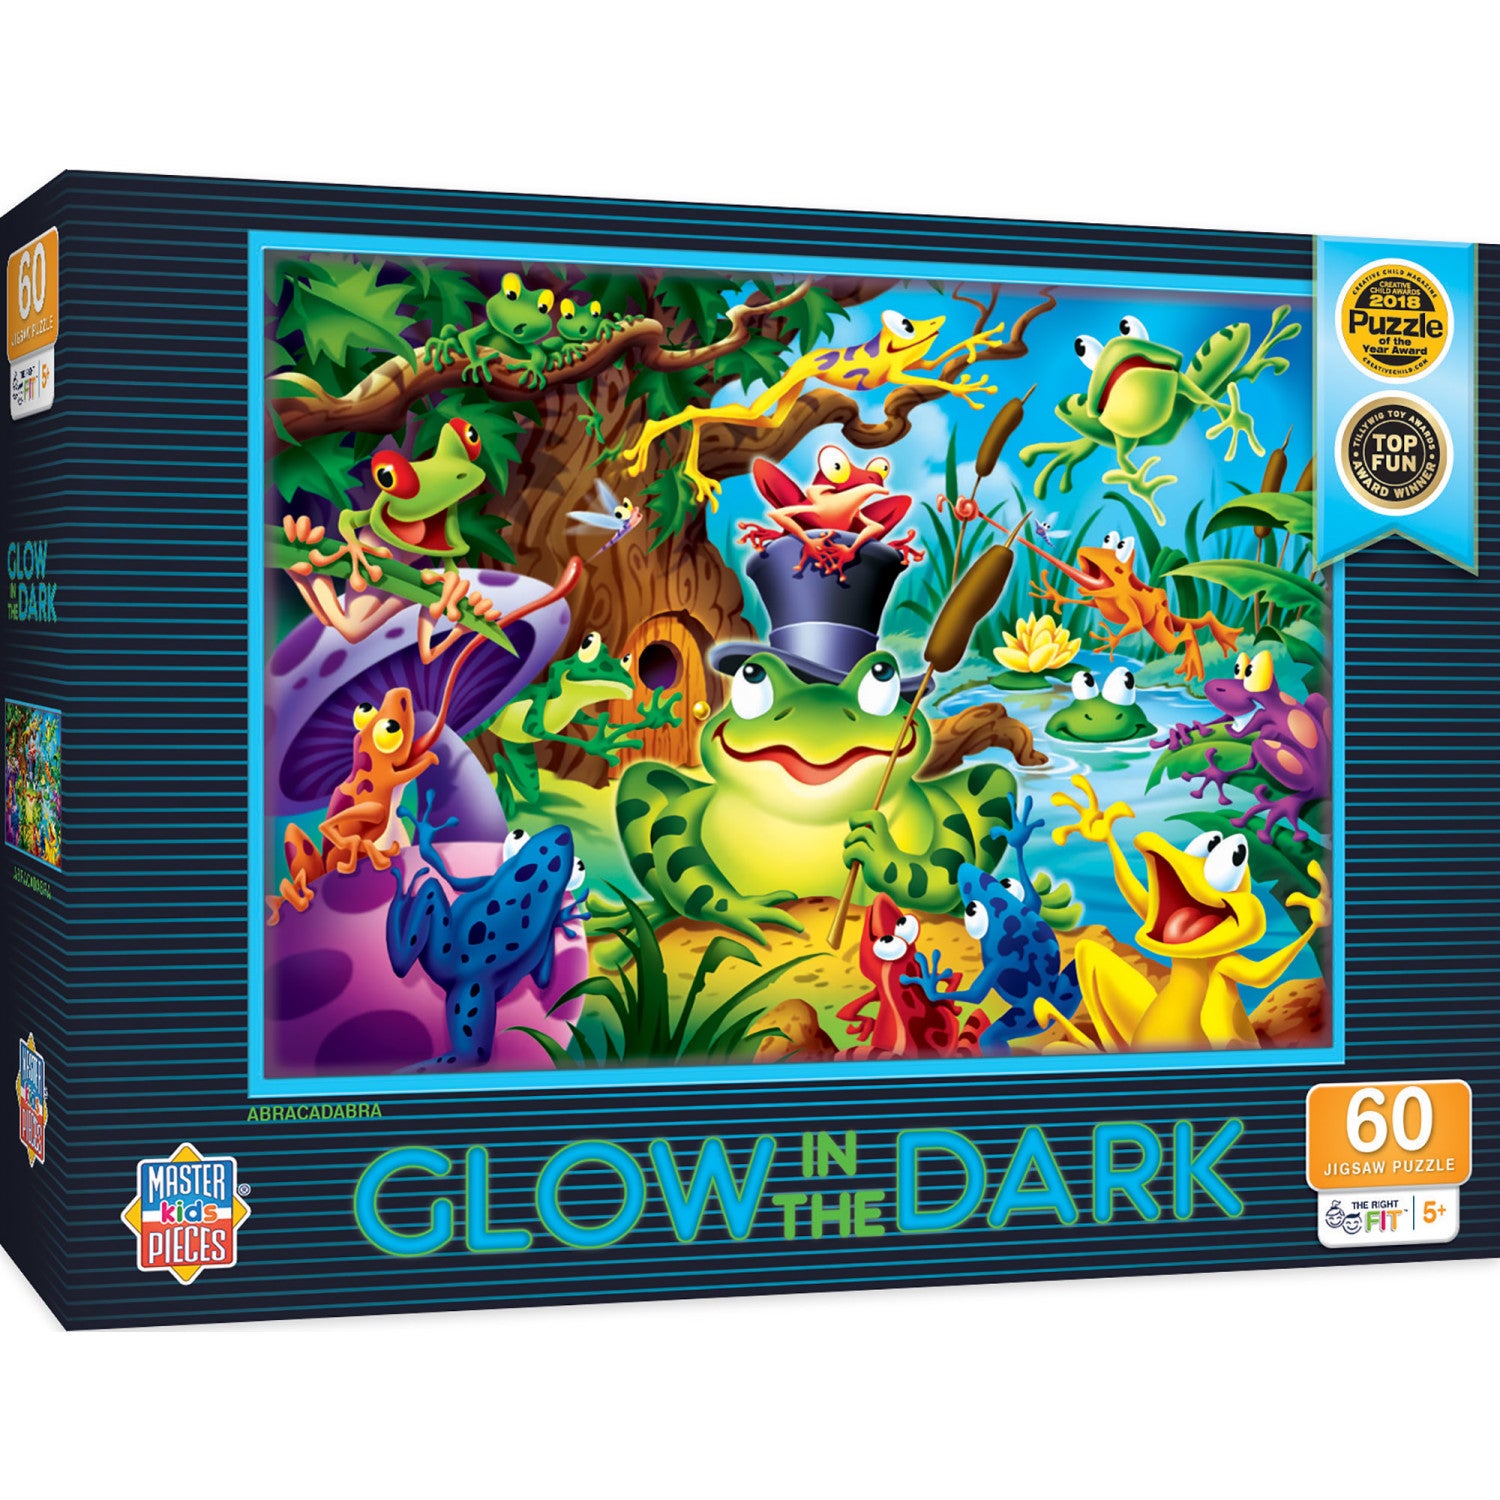 Glow in the Dark - Abracadabra 60 Piece Kids Puzzle